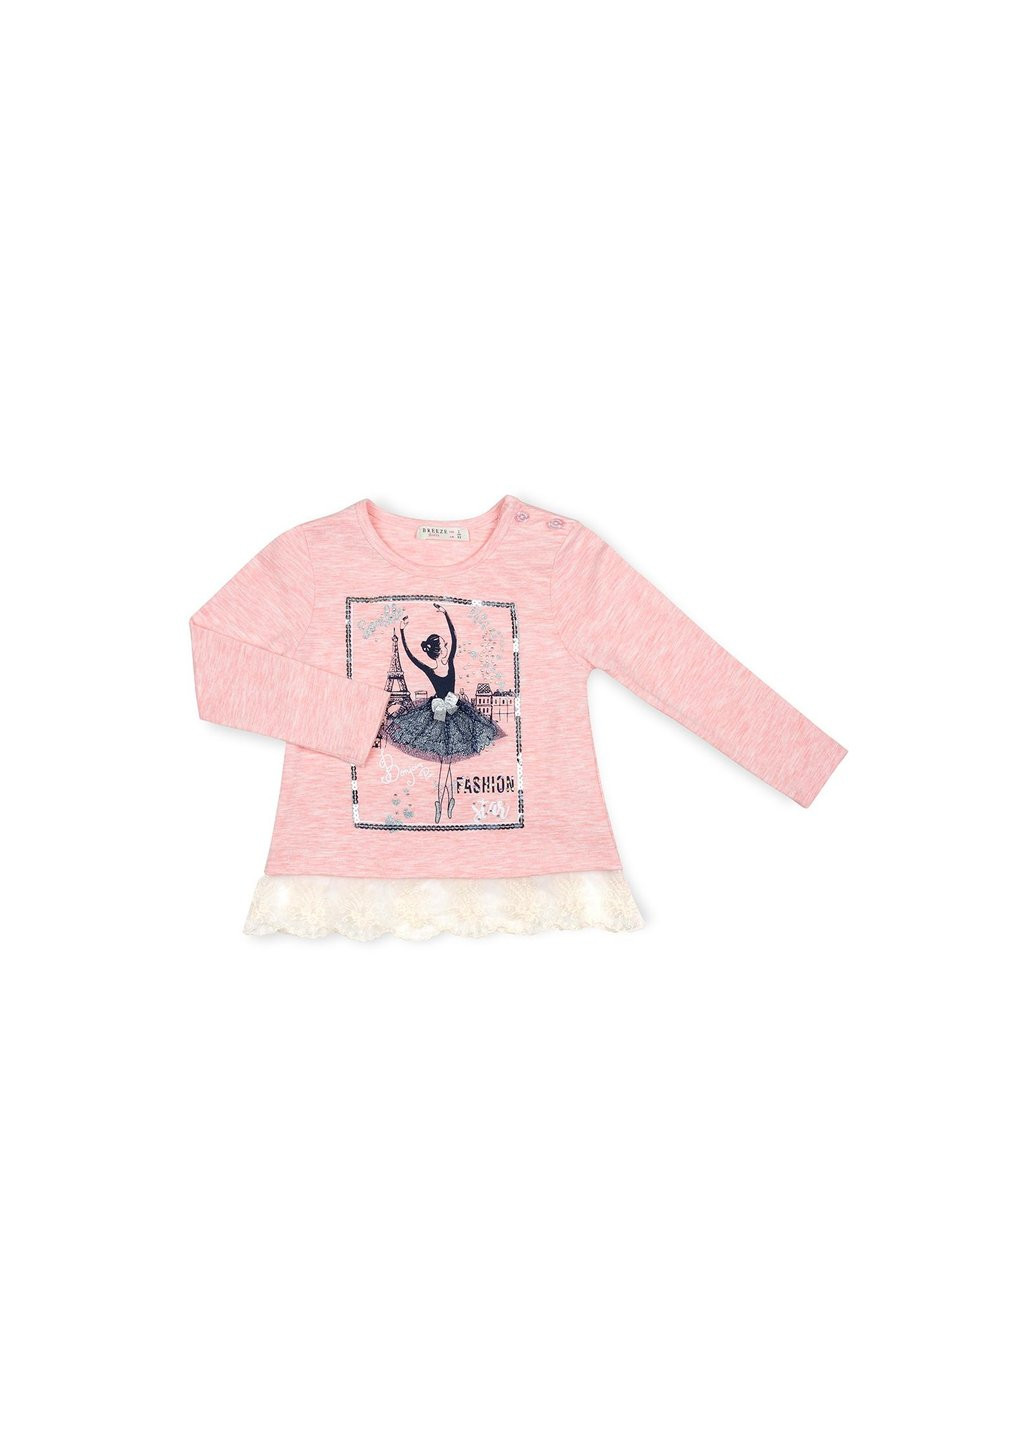 Комбинированный демисезонный набор детской одежды с балеринкой (10382-98g-pink) Breeze